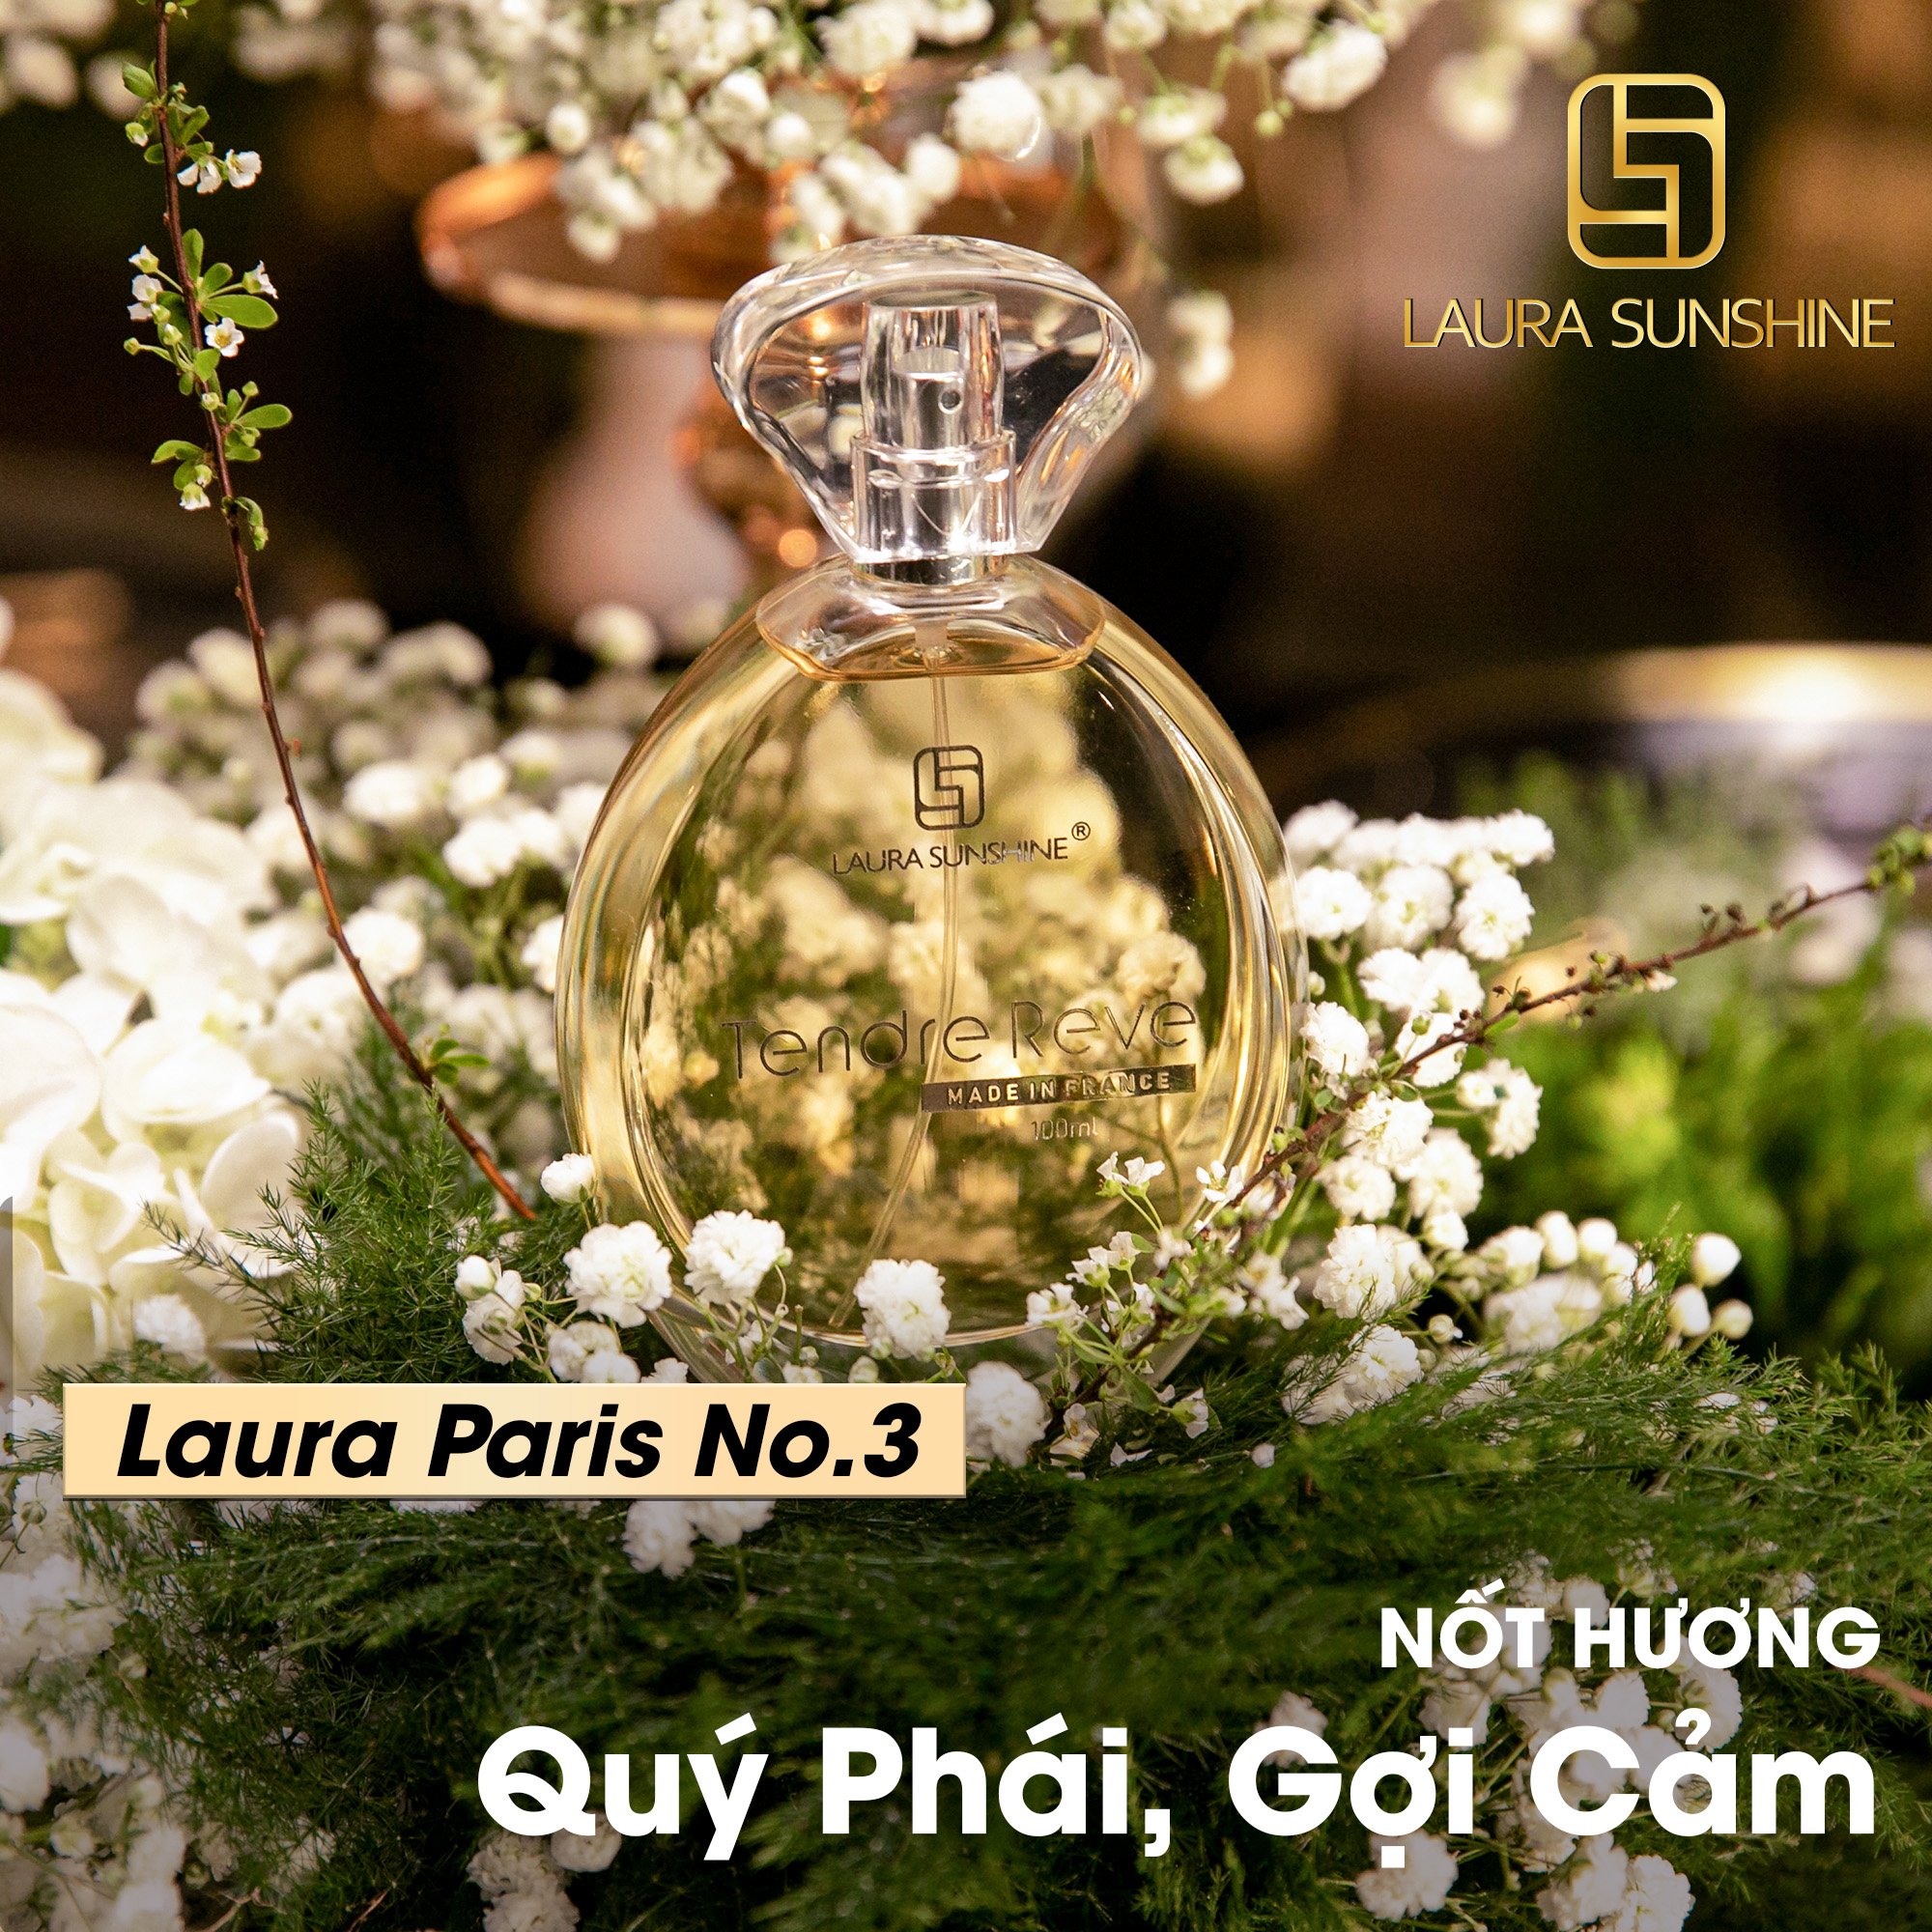 Nước hoa nữ Laura Paris #03 Tendre Reve - Eau De Parfum - 100ml - Laura Sunshine